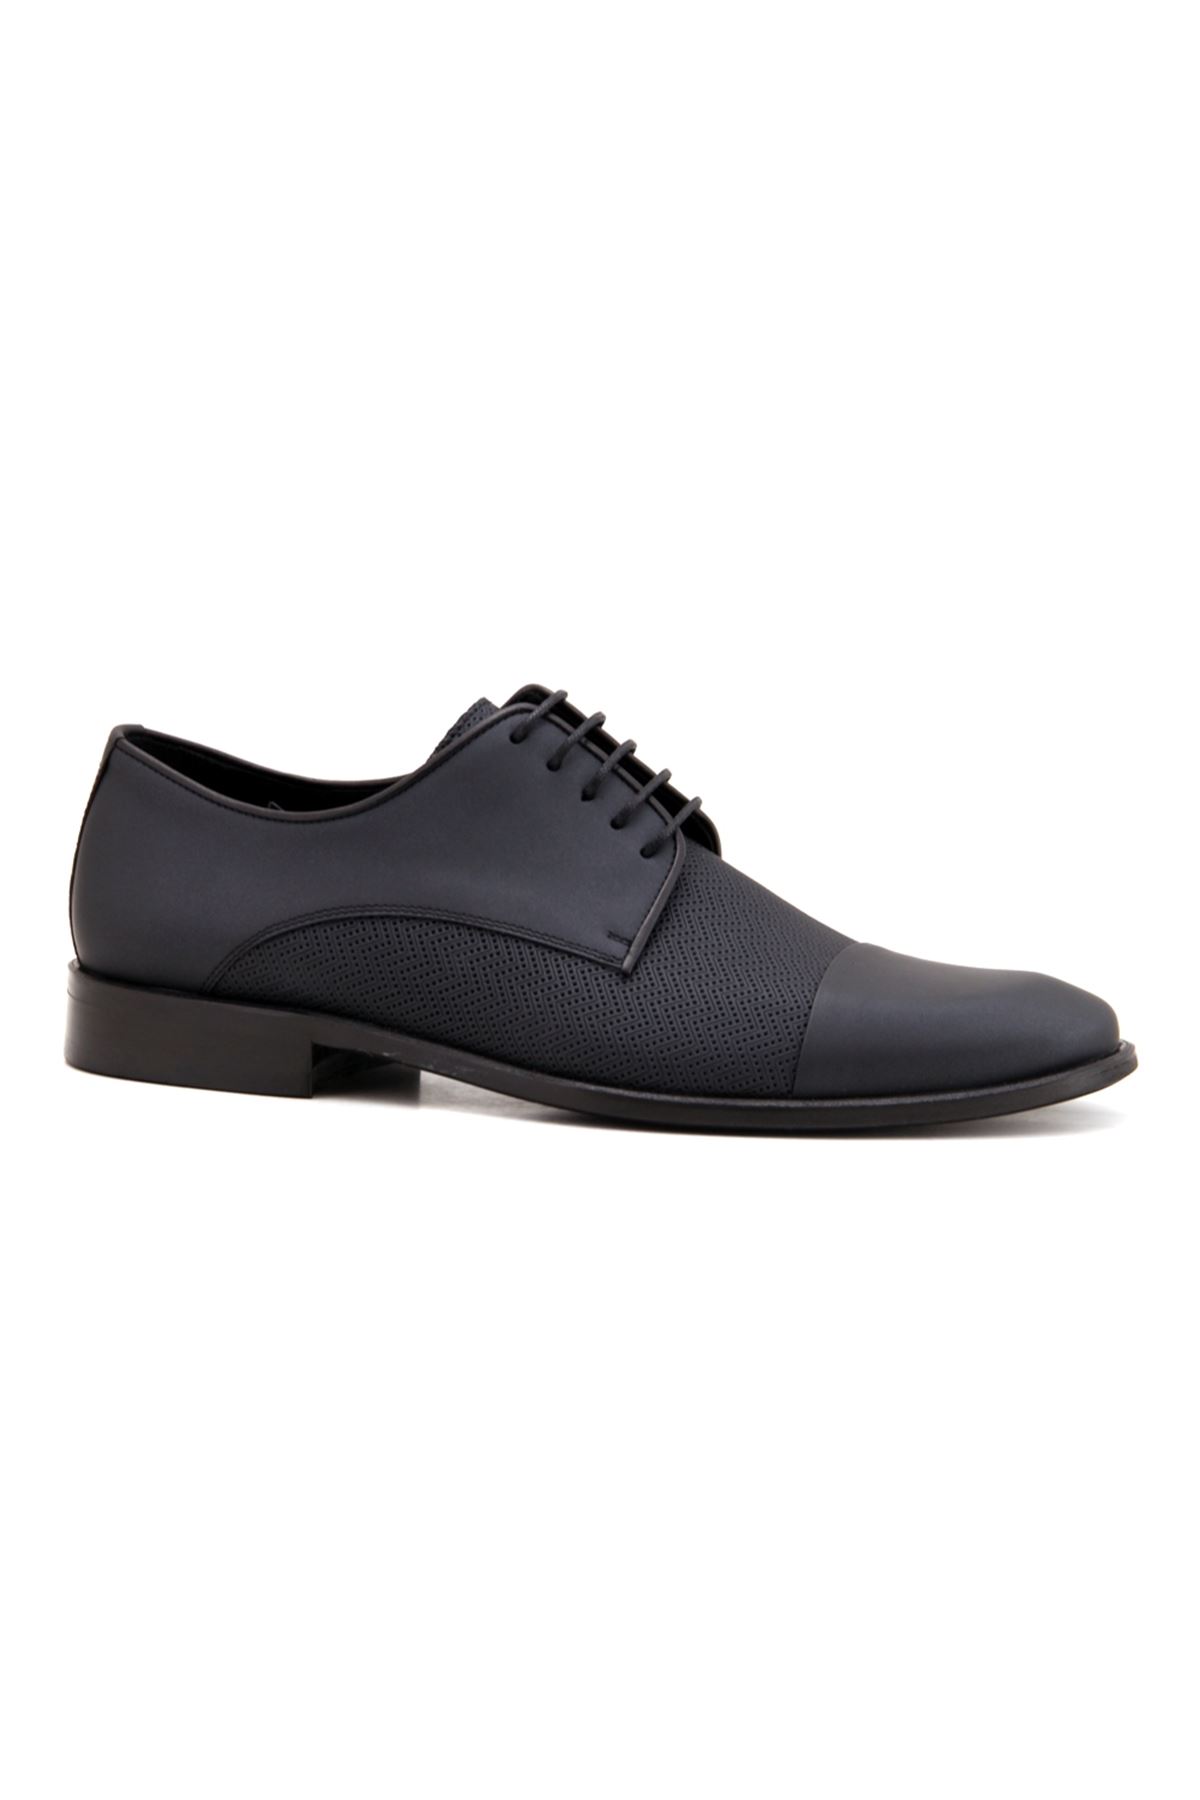 Libero 3578 Deri Klasik Erkek Ayakkabı - Siyah